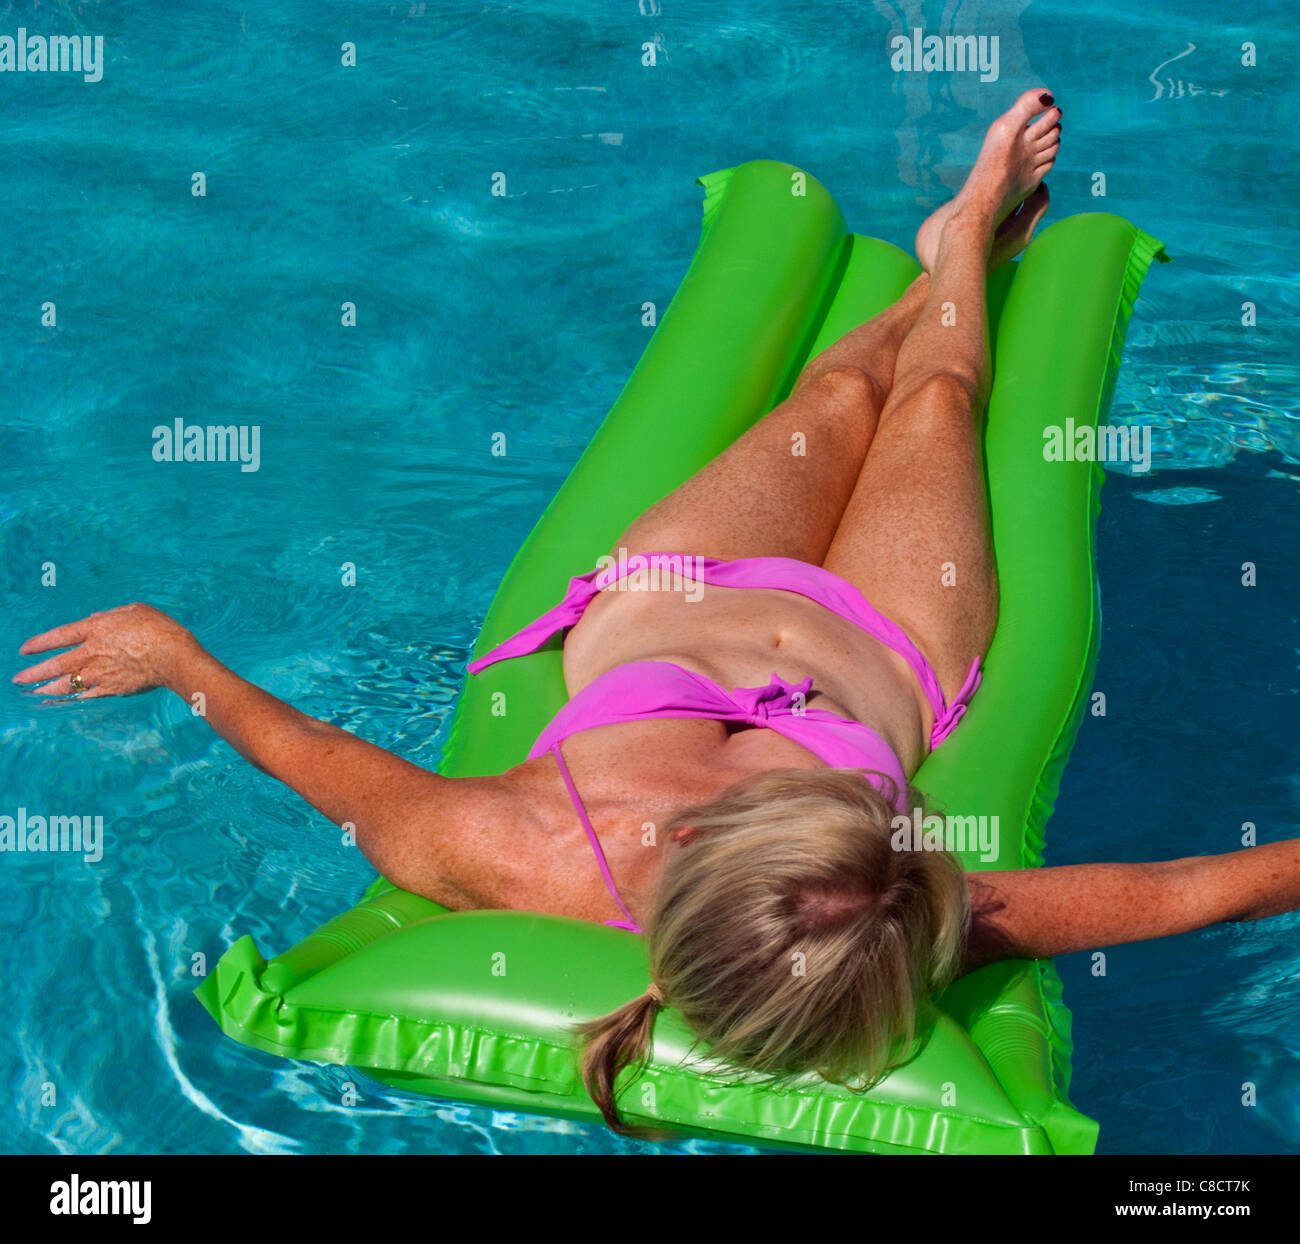 La donna a prendere il sole su un lilo in una piscina. Foto Stock